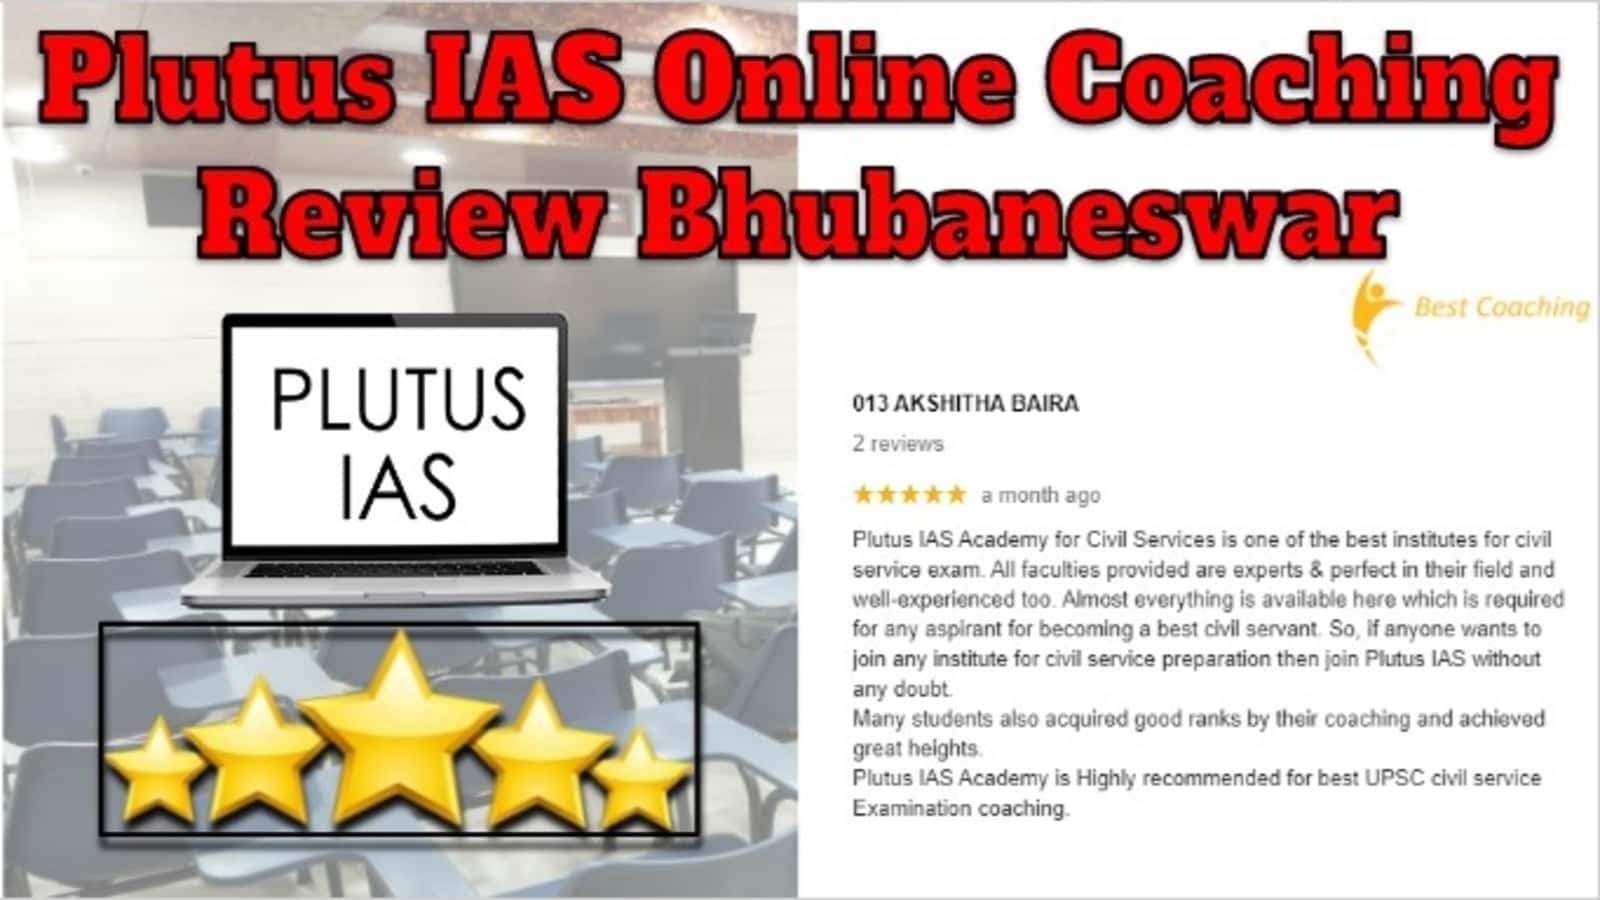 Plutus IAS Online Coaching Review Bhubaneswar